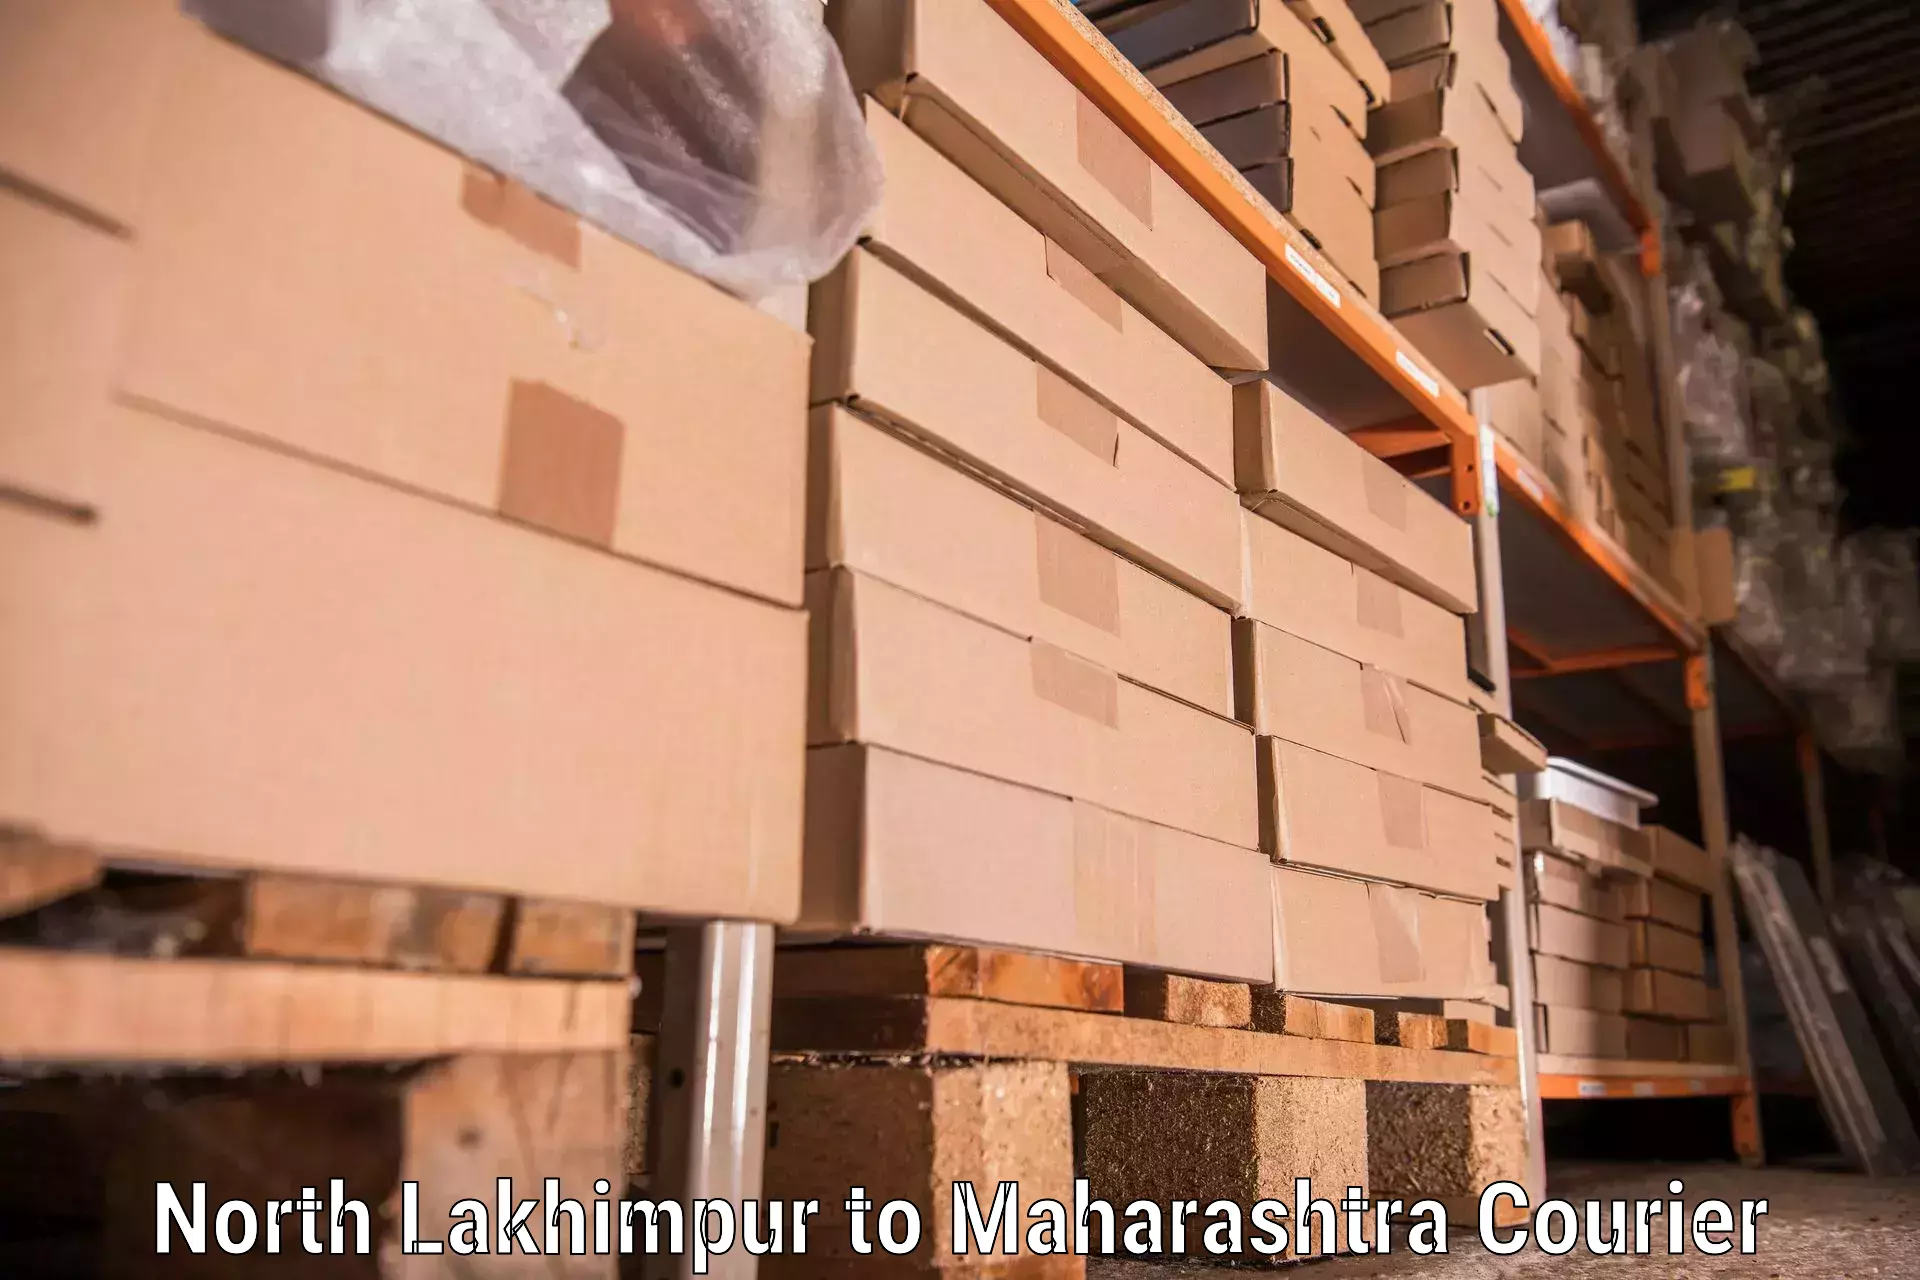 Skilled furniture movers North Lakhimpur to Atpadi